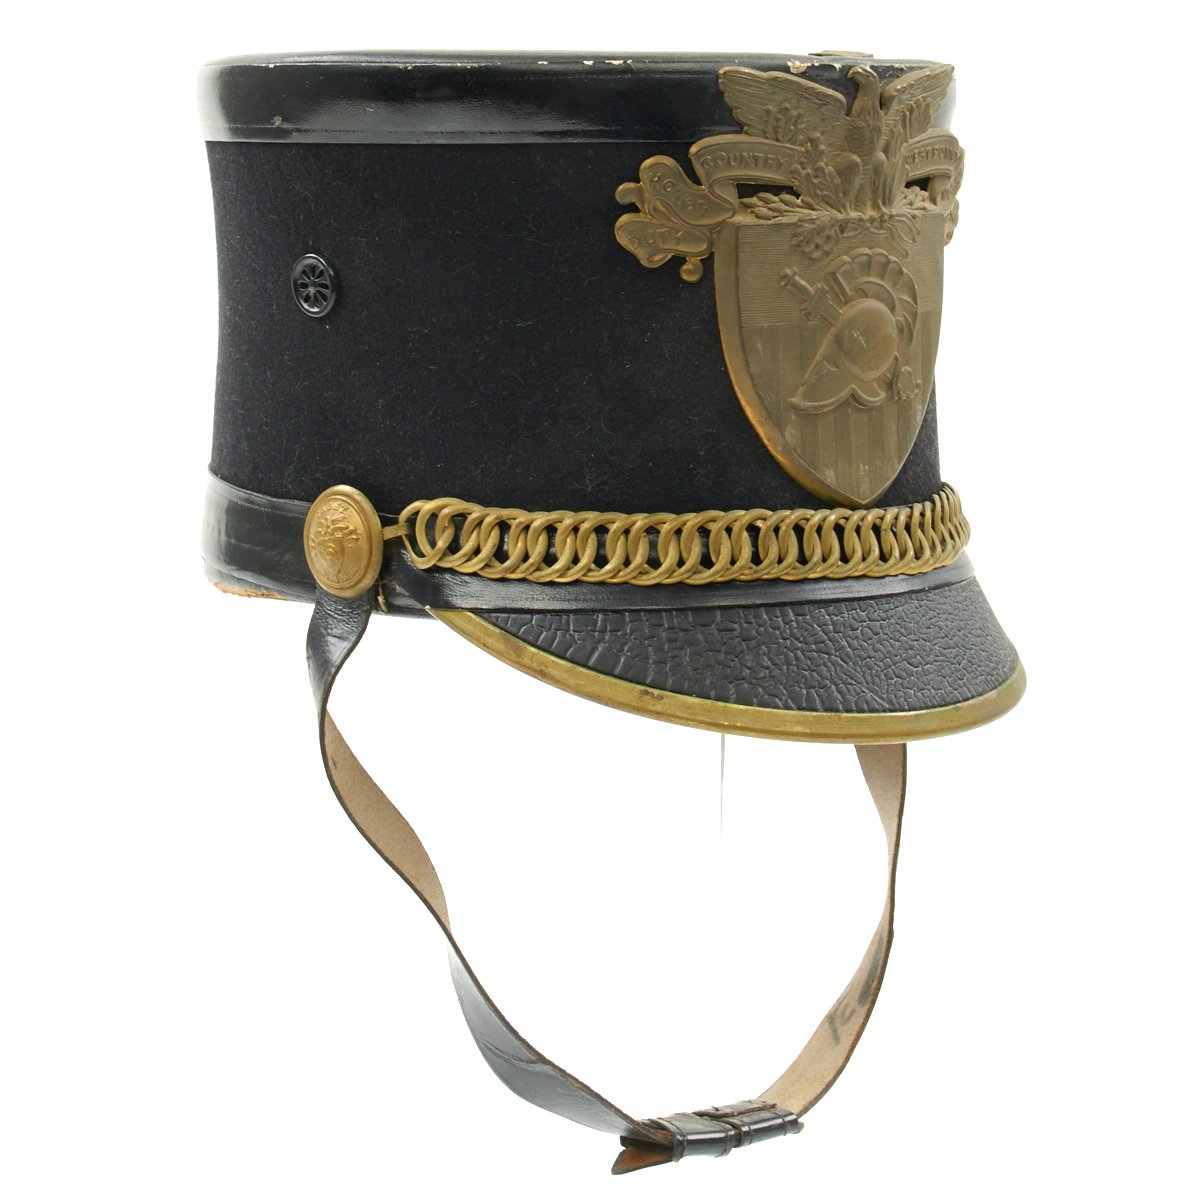 Original U.S. Military Academy West Point Shako Helmet - Circa 1915 ...